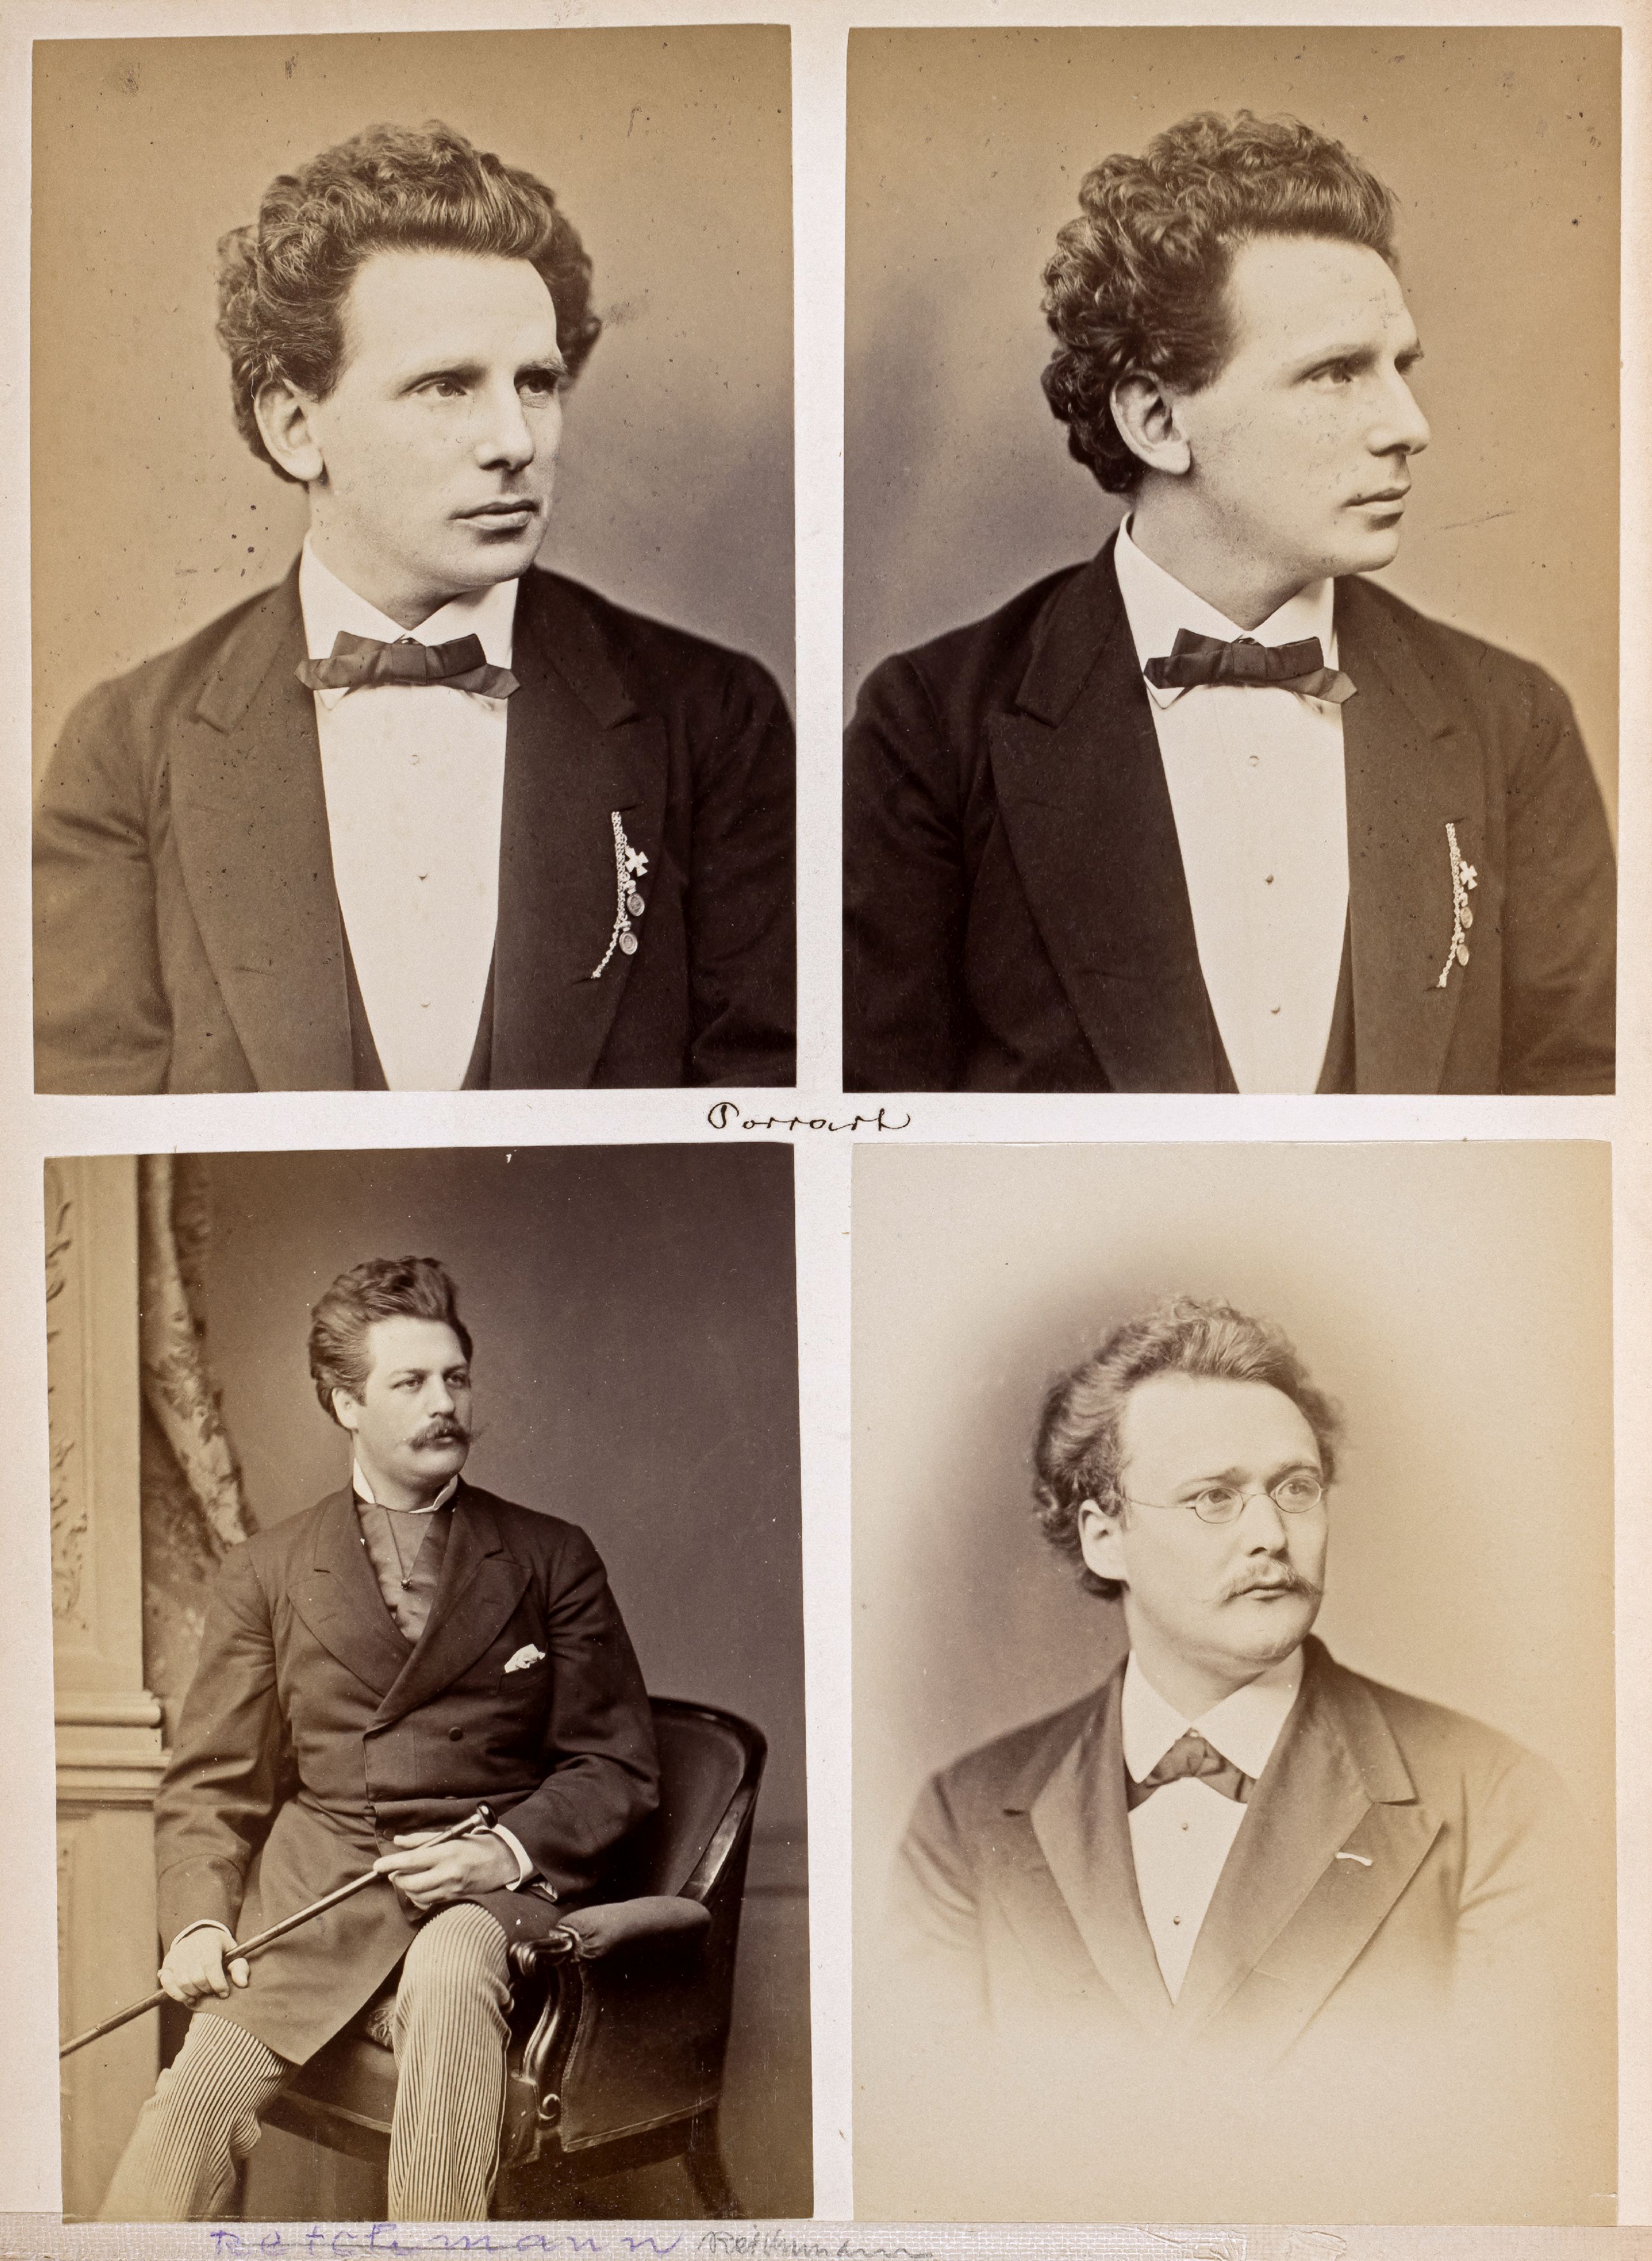 FOTOGRAFIE | Hanfstaengl, Franz | 1807 Baiernrain bei Tölz - 1877 München - Image 16 of 25